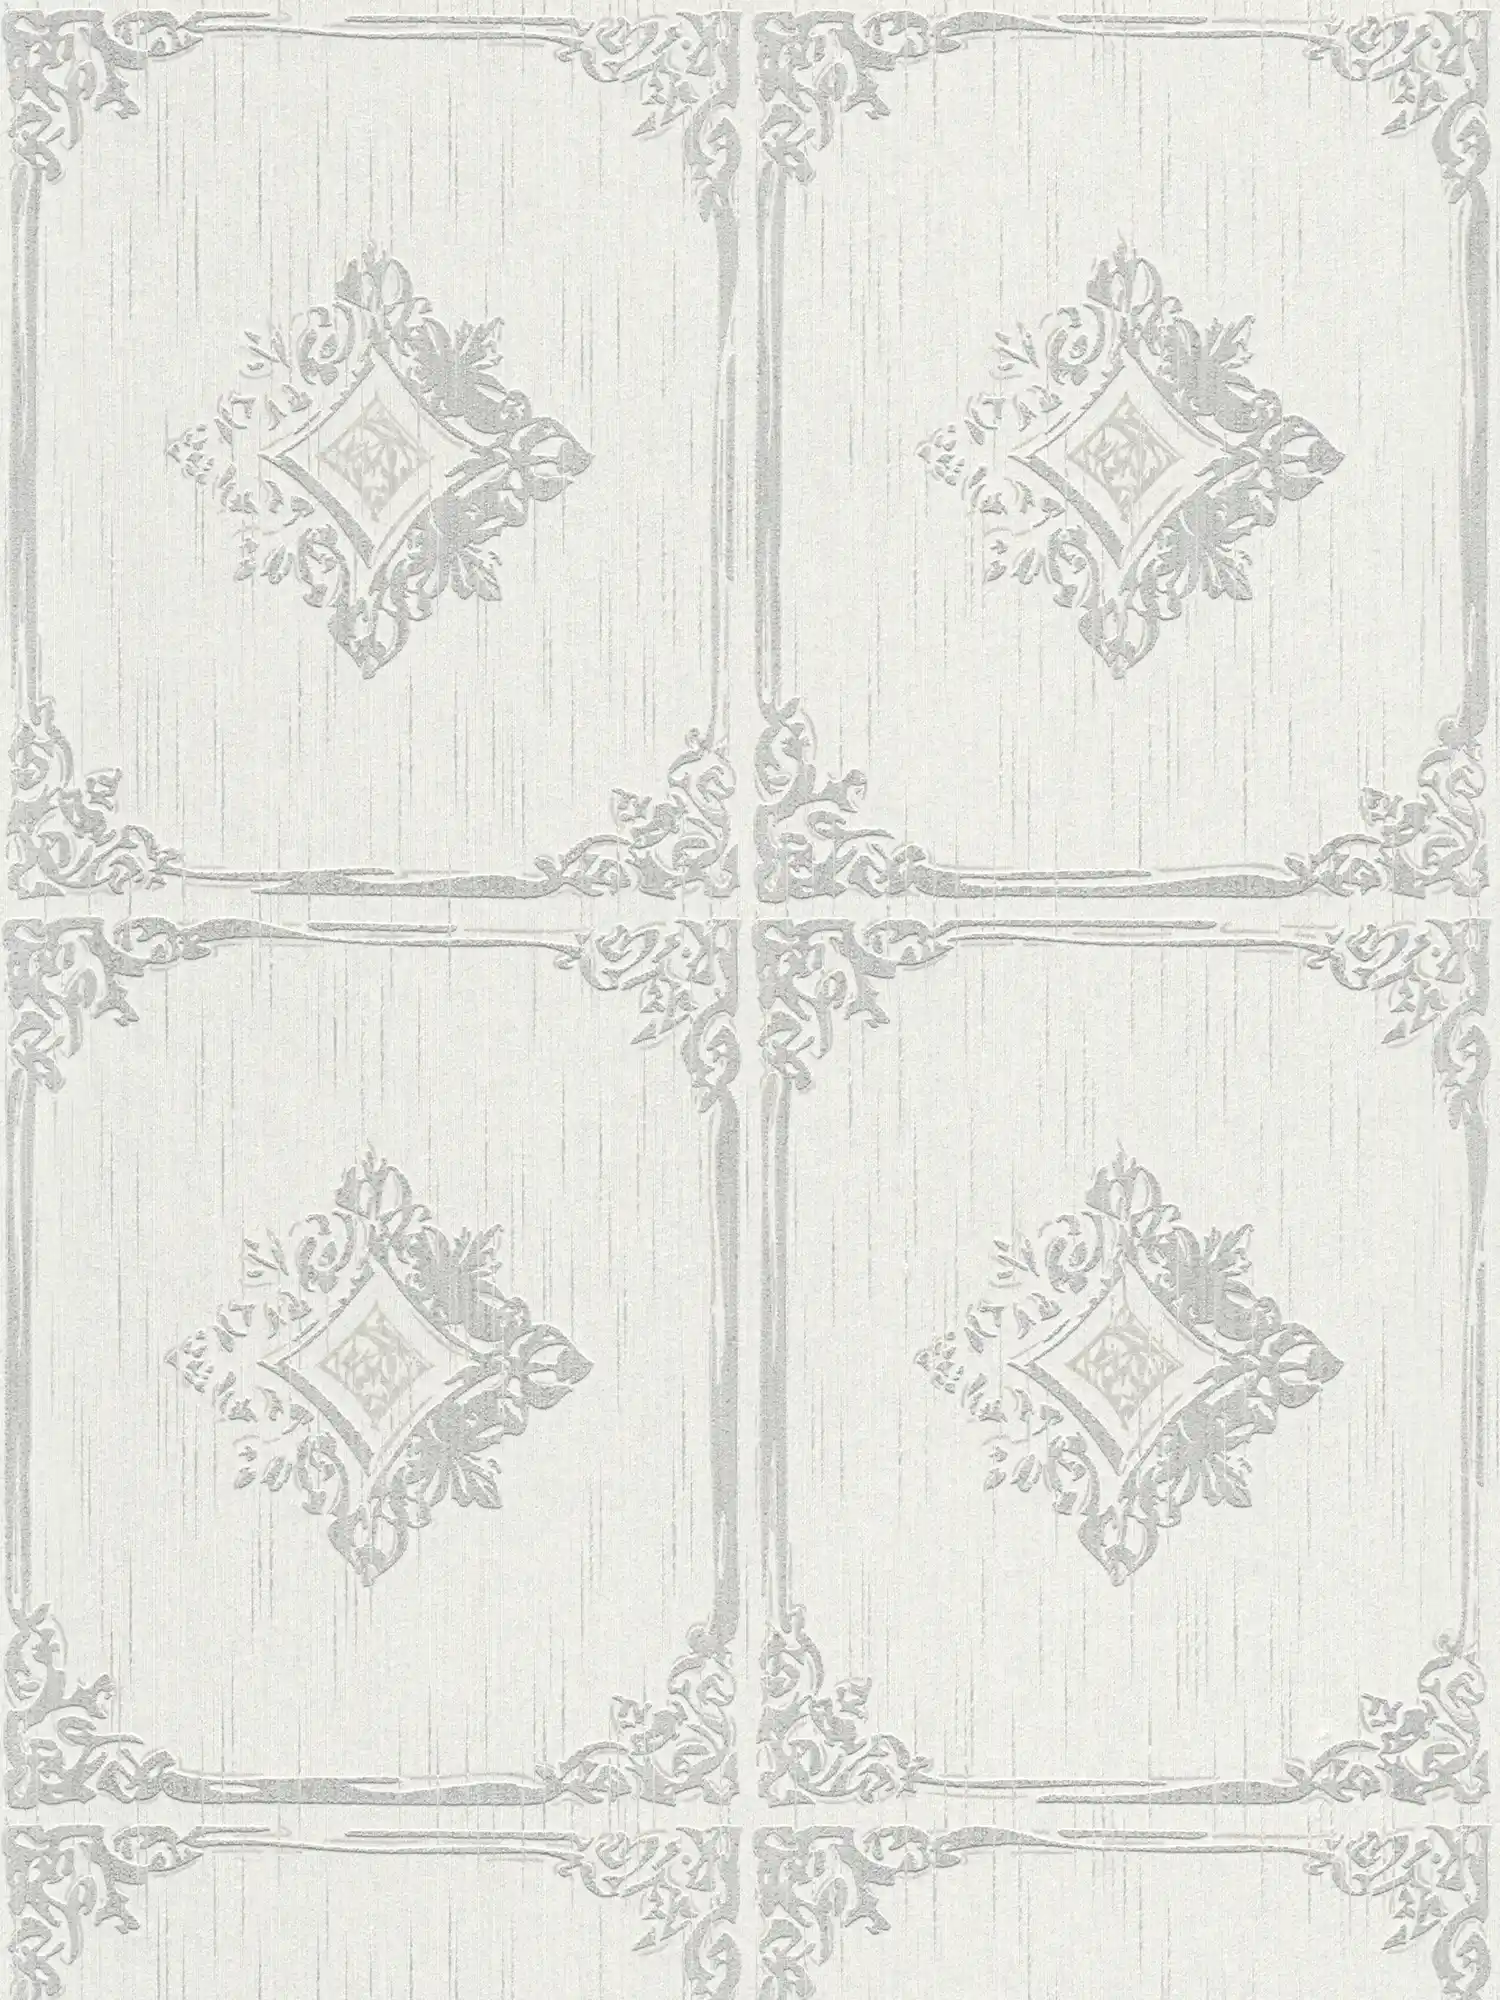         Tapete Vintage Stuck Design mit Ornament Kassetten – Grau, Weiß
    